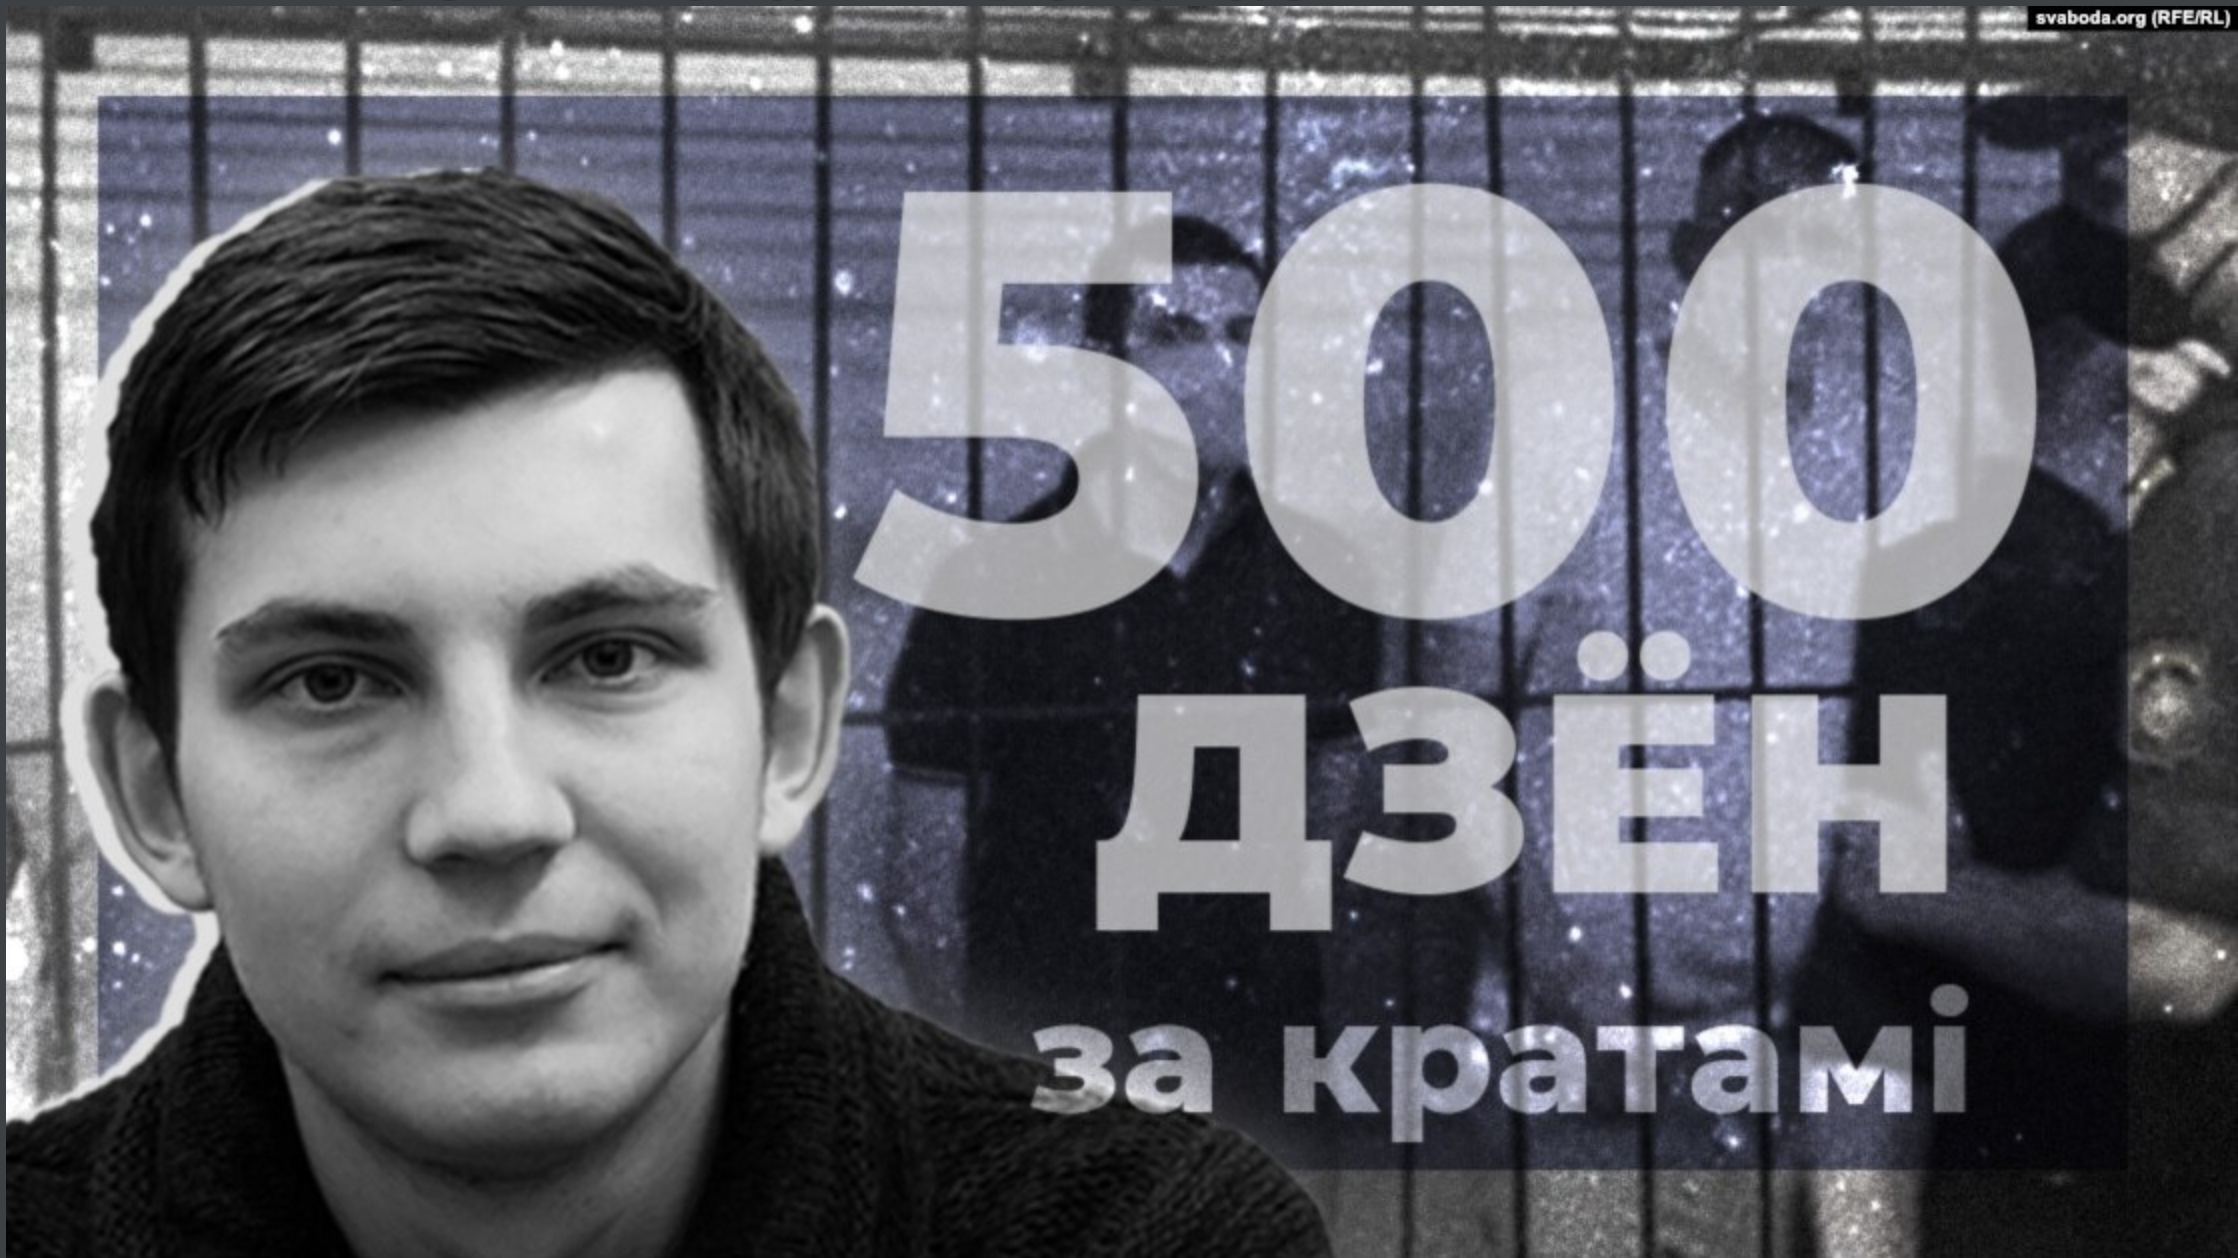 500 days of injustice: RFE/RL journalist Losik held in Belarus